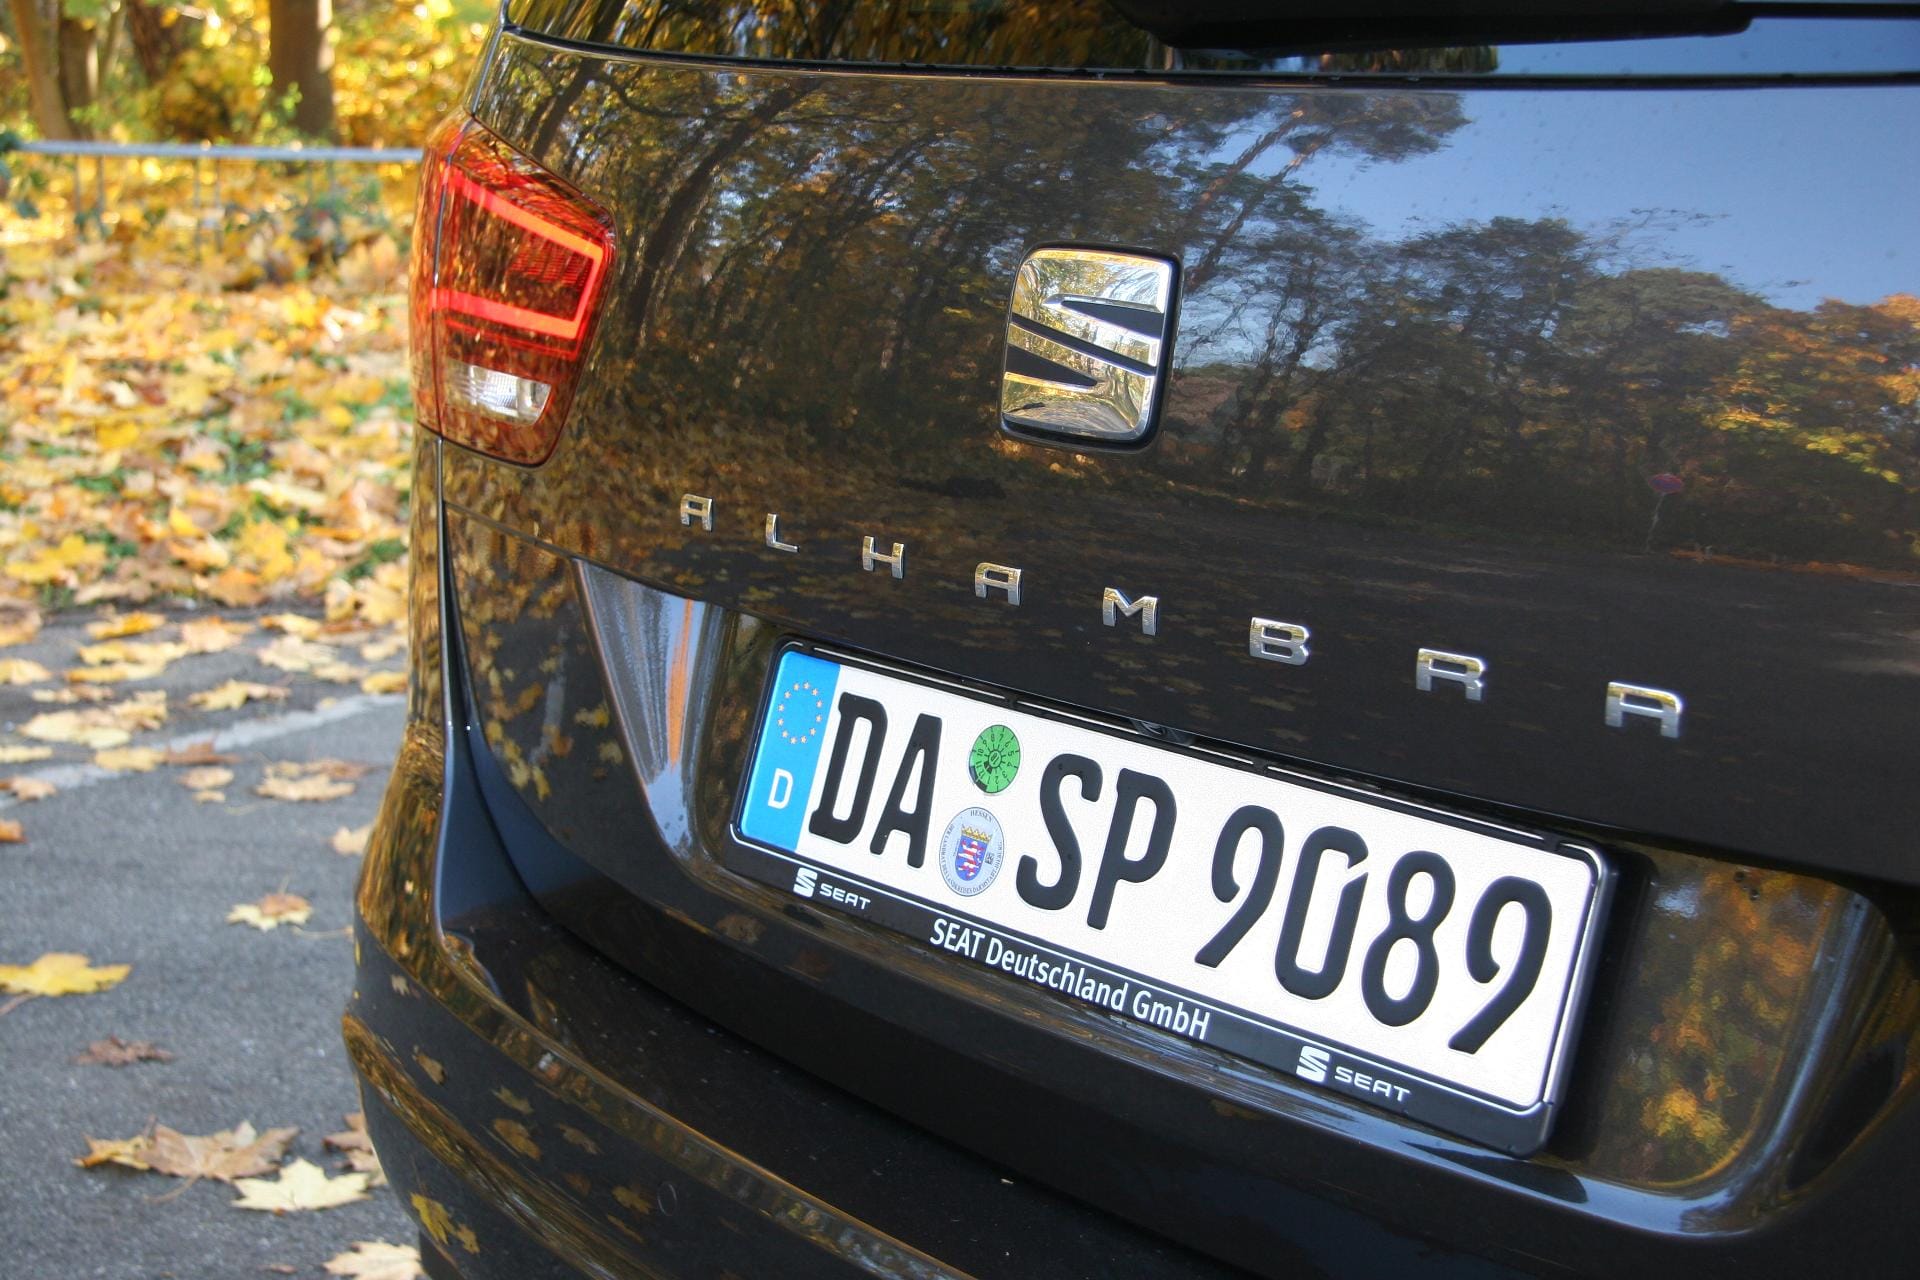 Der Seat Alhambra ist bis auf die Logos mit dem VW Sharan identisch - aber deutlich günstiger.